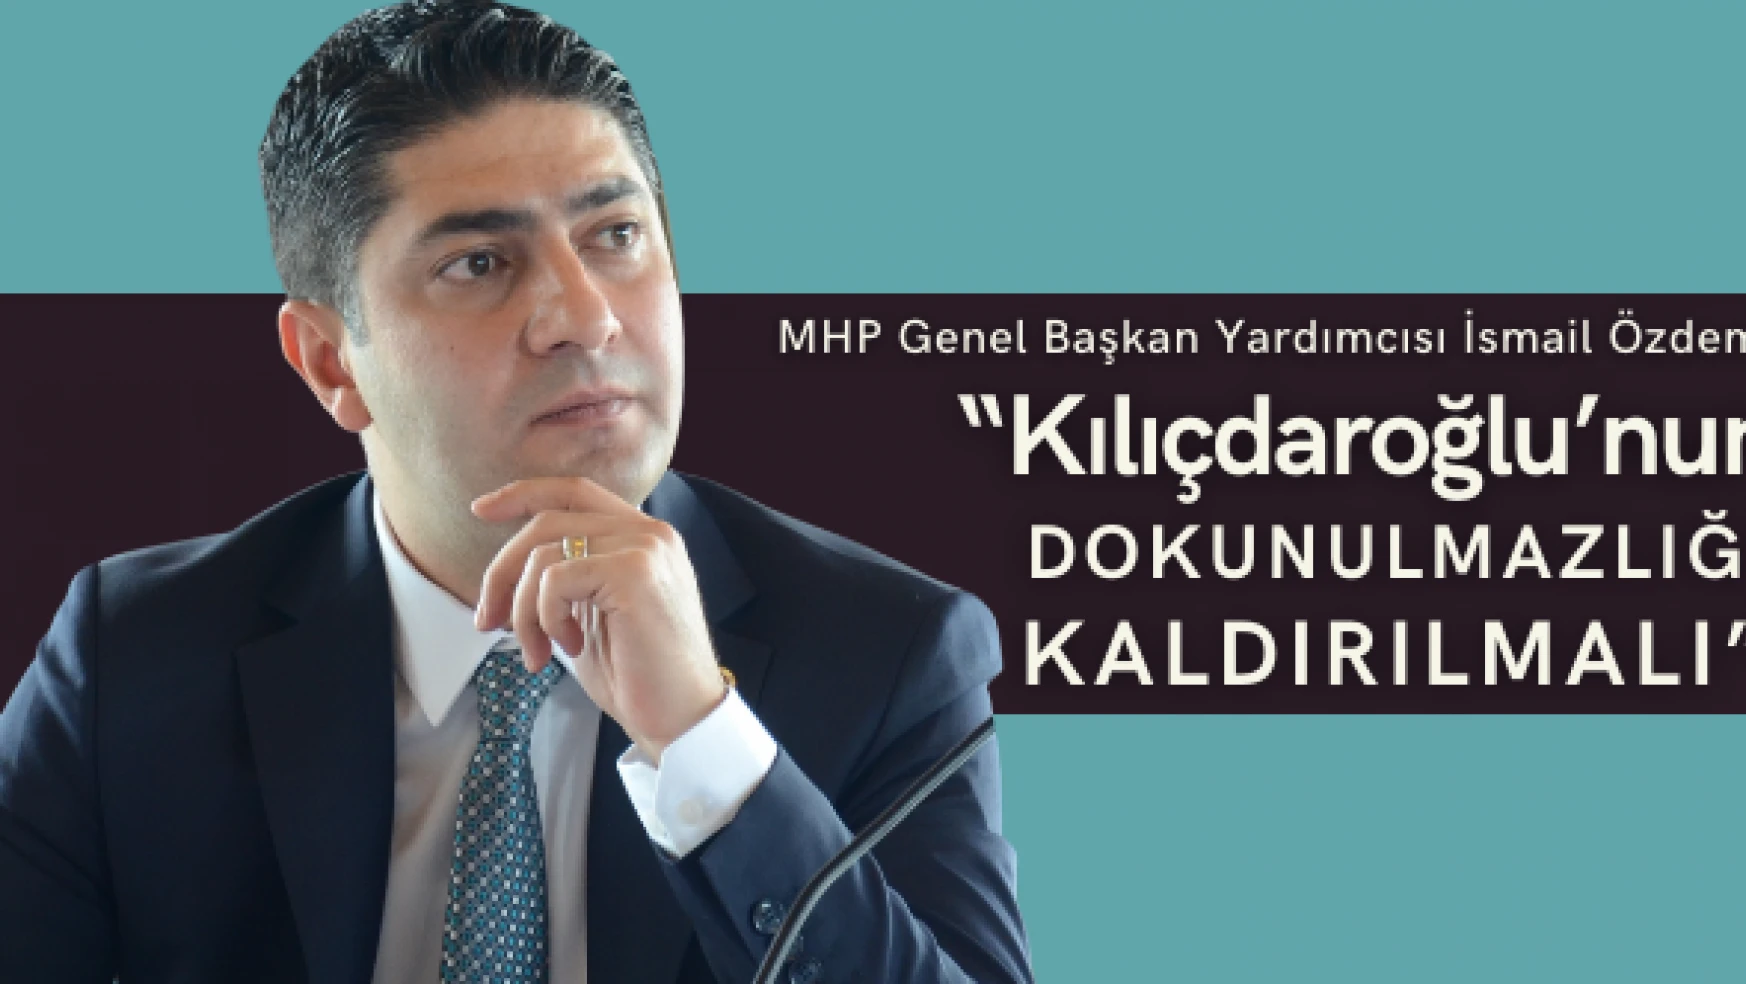 MHP'li Özdemir: 'Kılıçdaroğlu'nun dokunulmazlığı kaldırılmalı'